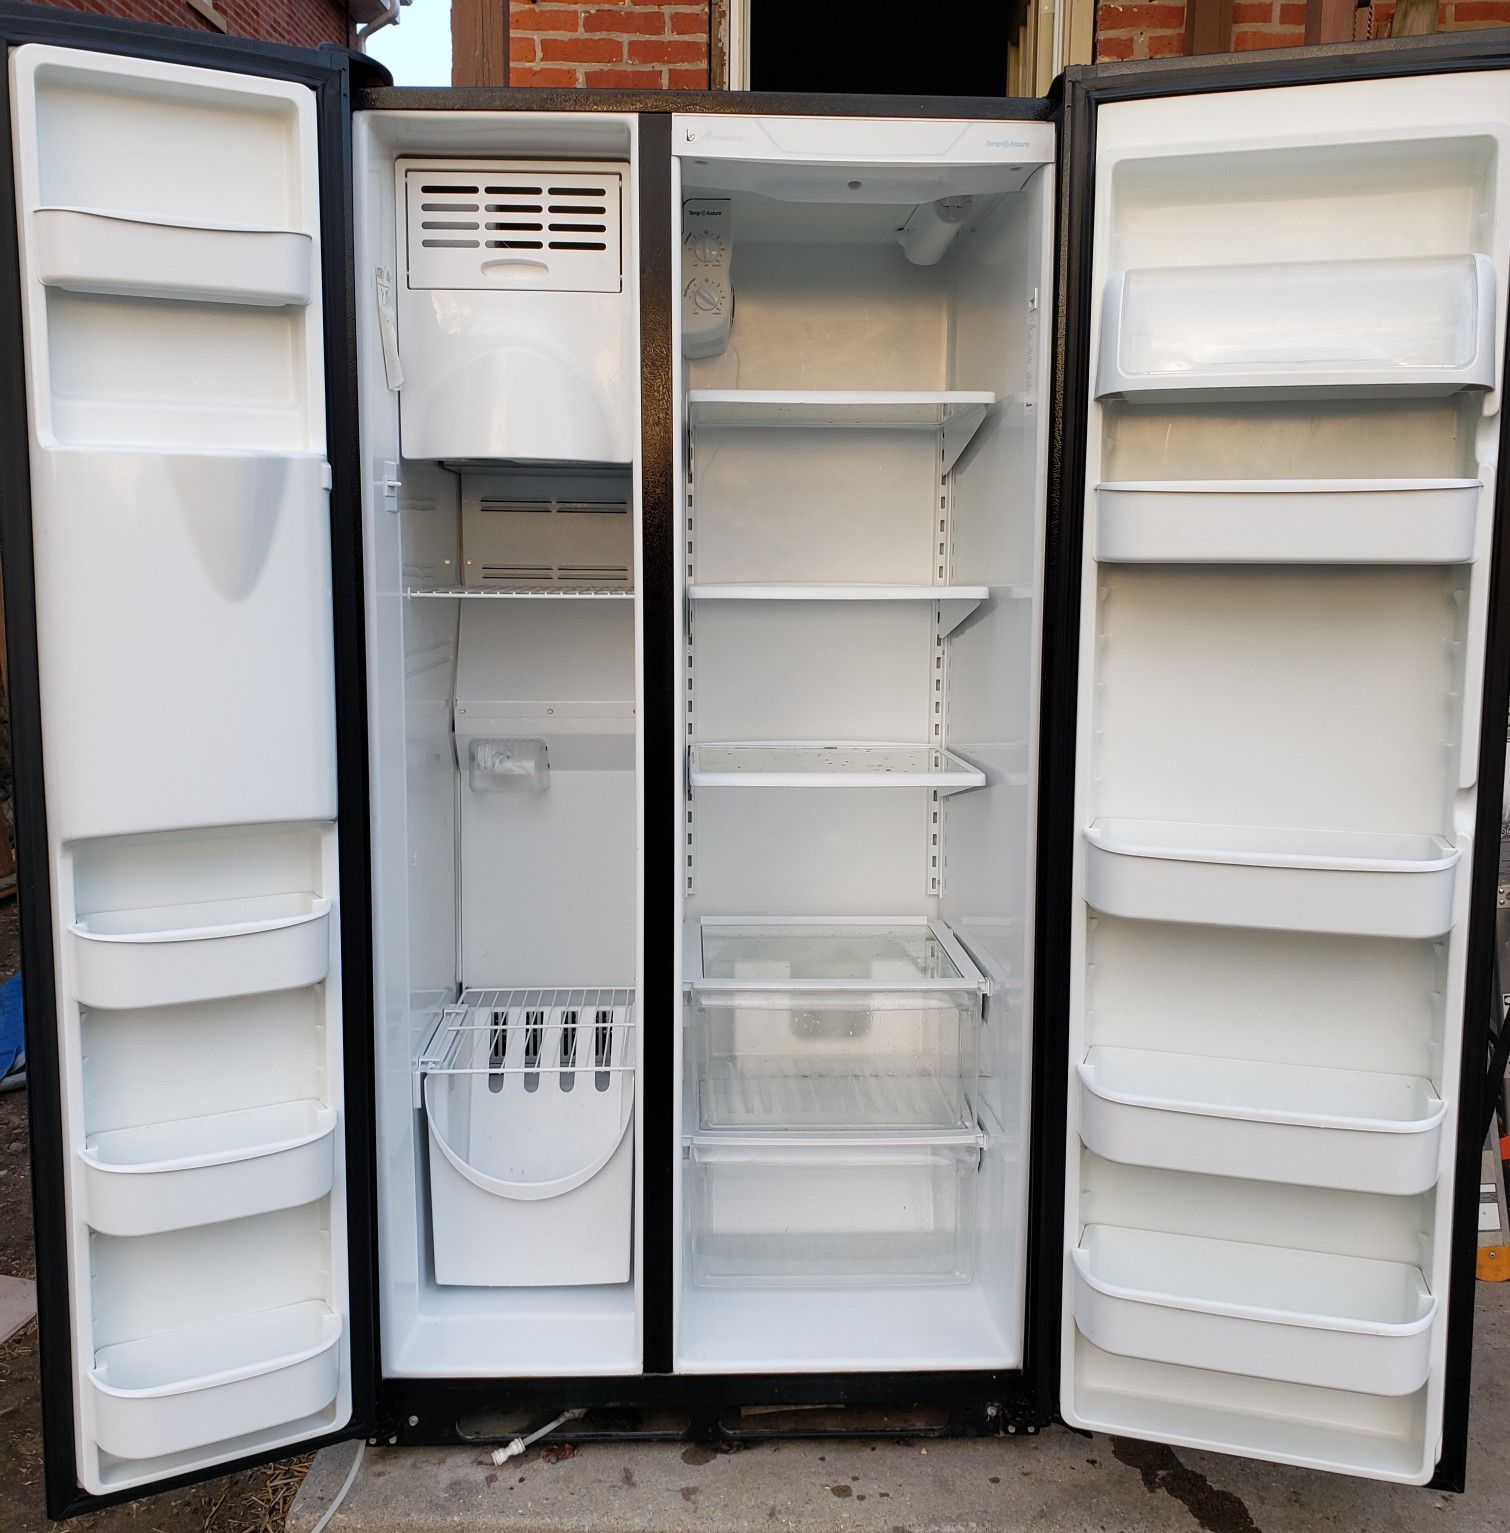 Refrigerator AMANA double door $300